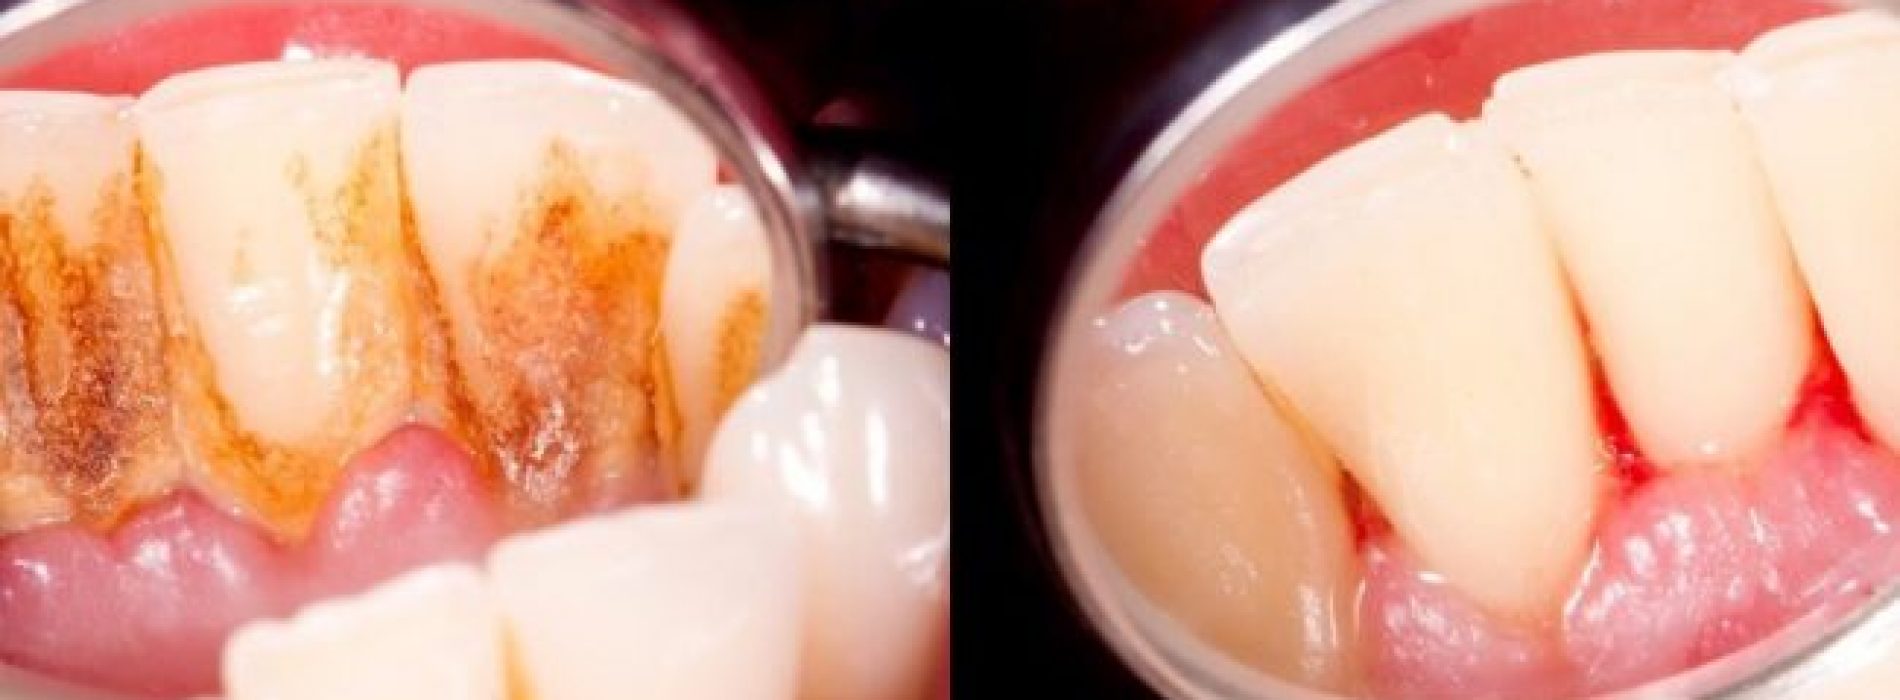 4 mengsels die tandplak volledig van uw tanden verwijderen